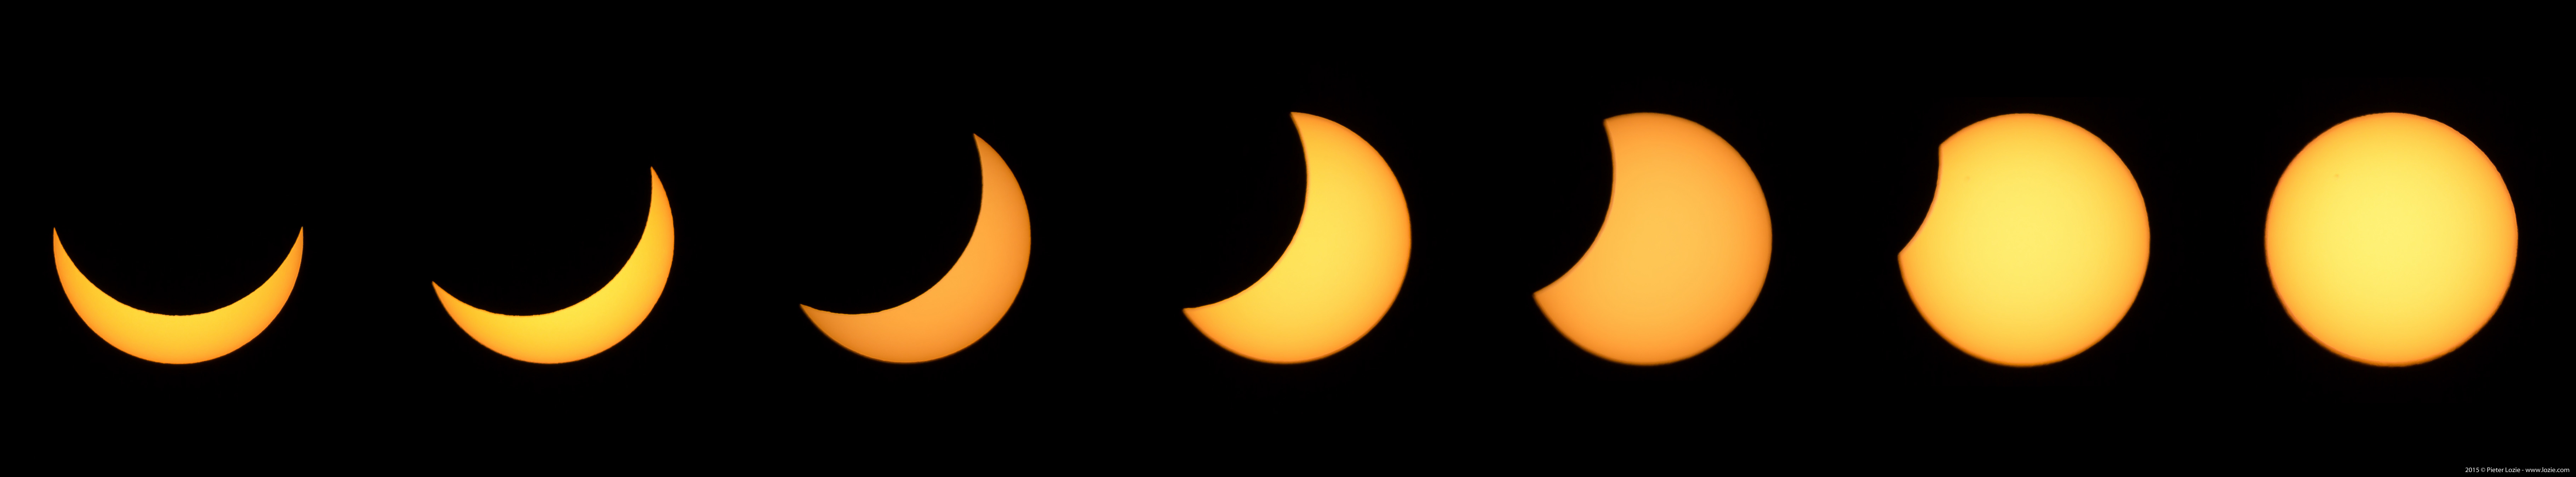 Eclips2015_Reeks